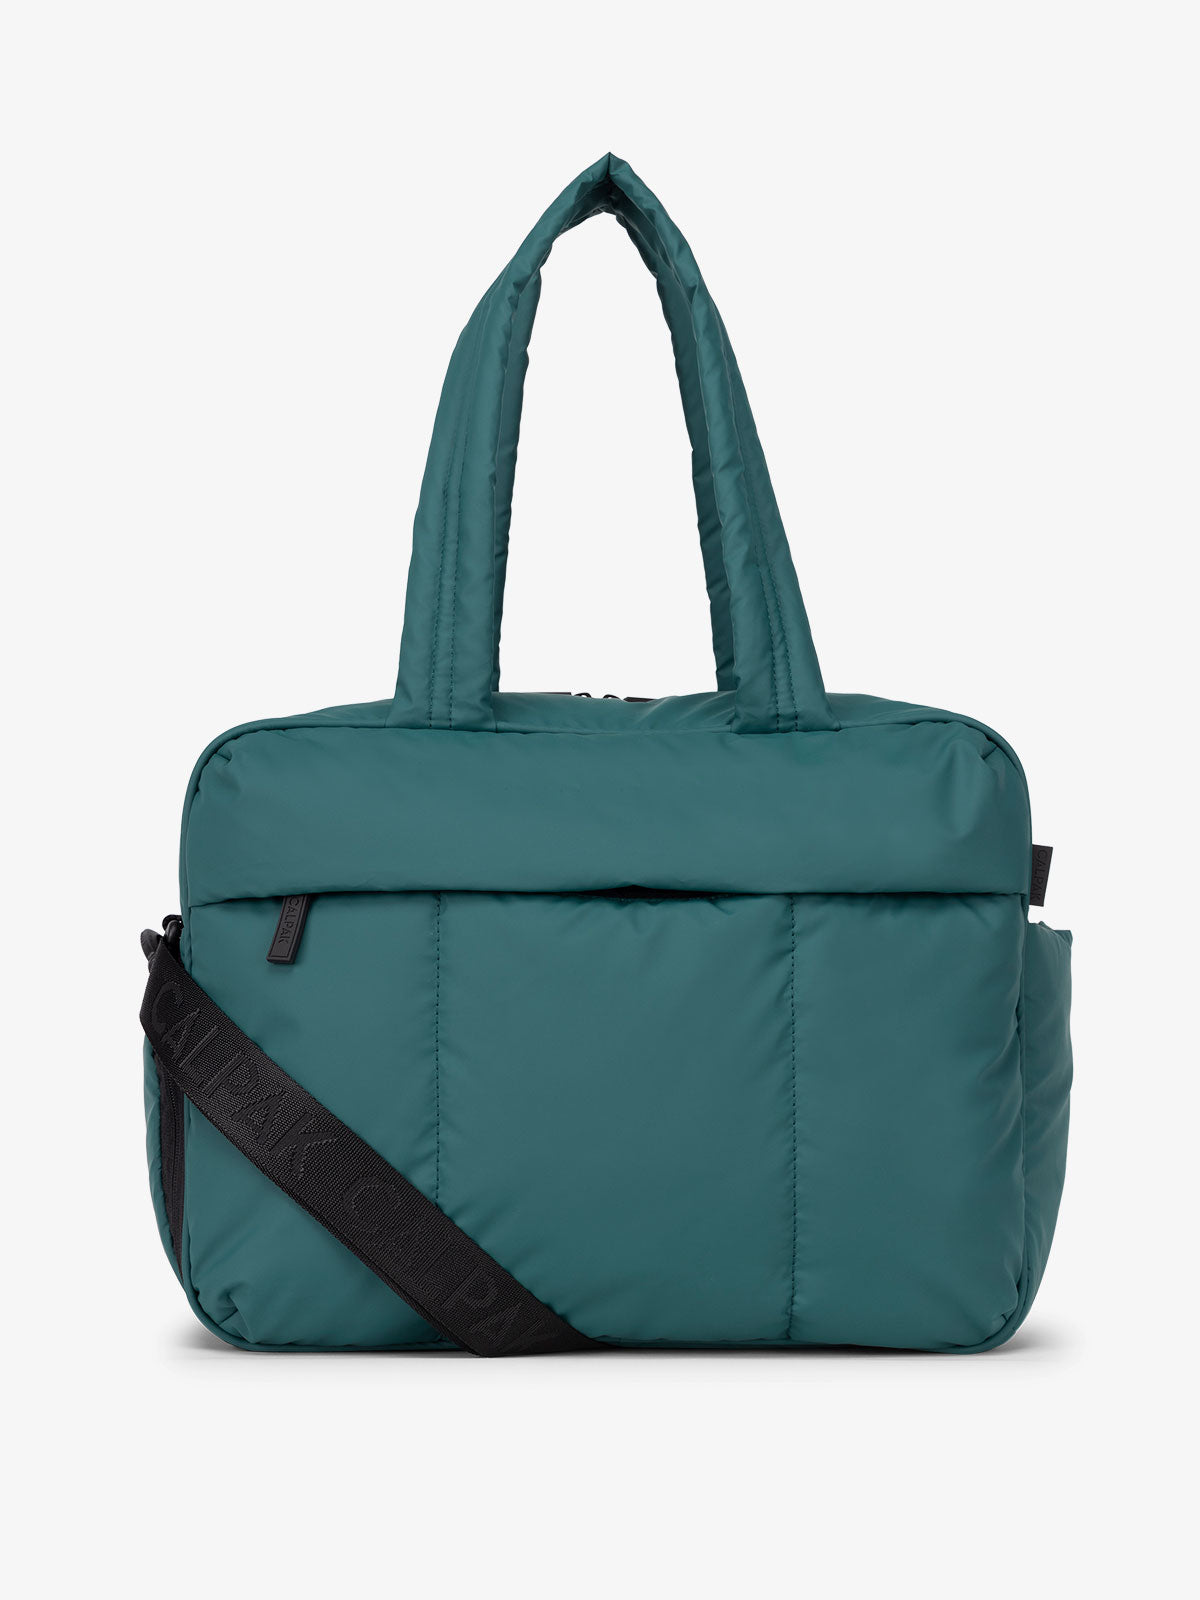 CALPAK Luka duffel bag in kale green